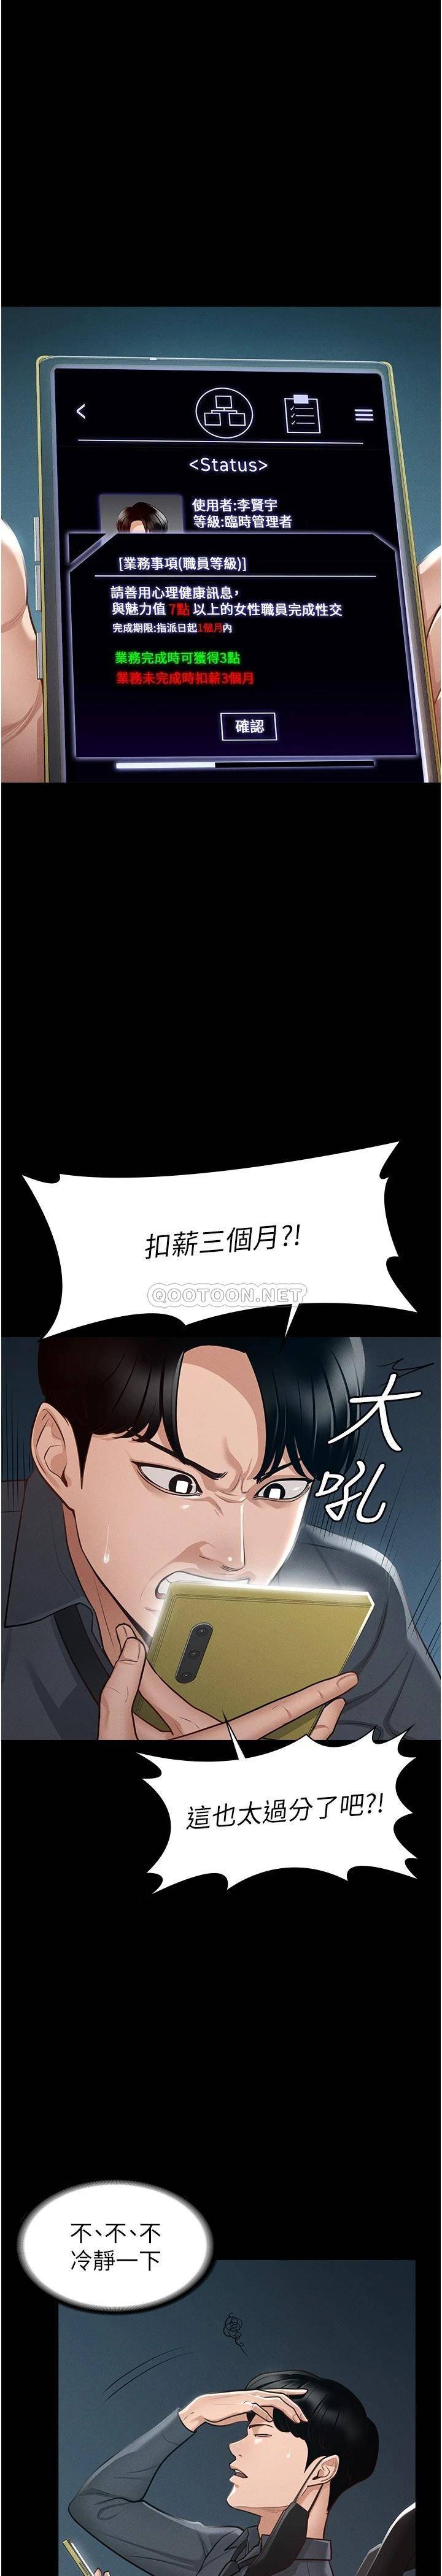 韩国污漫画 超級公務員 第8话 眼前的「性」福最重要! 1